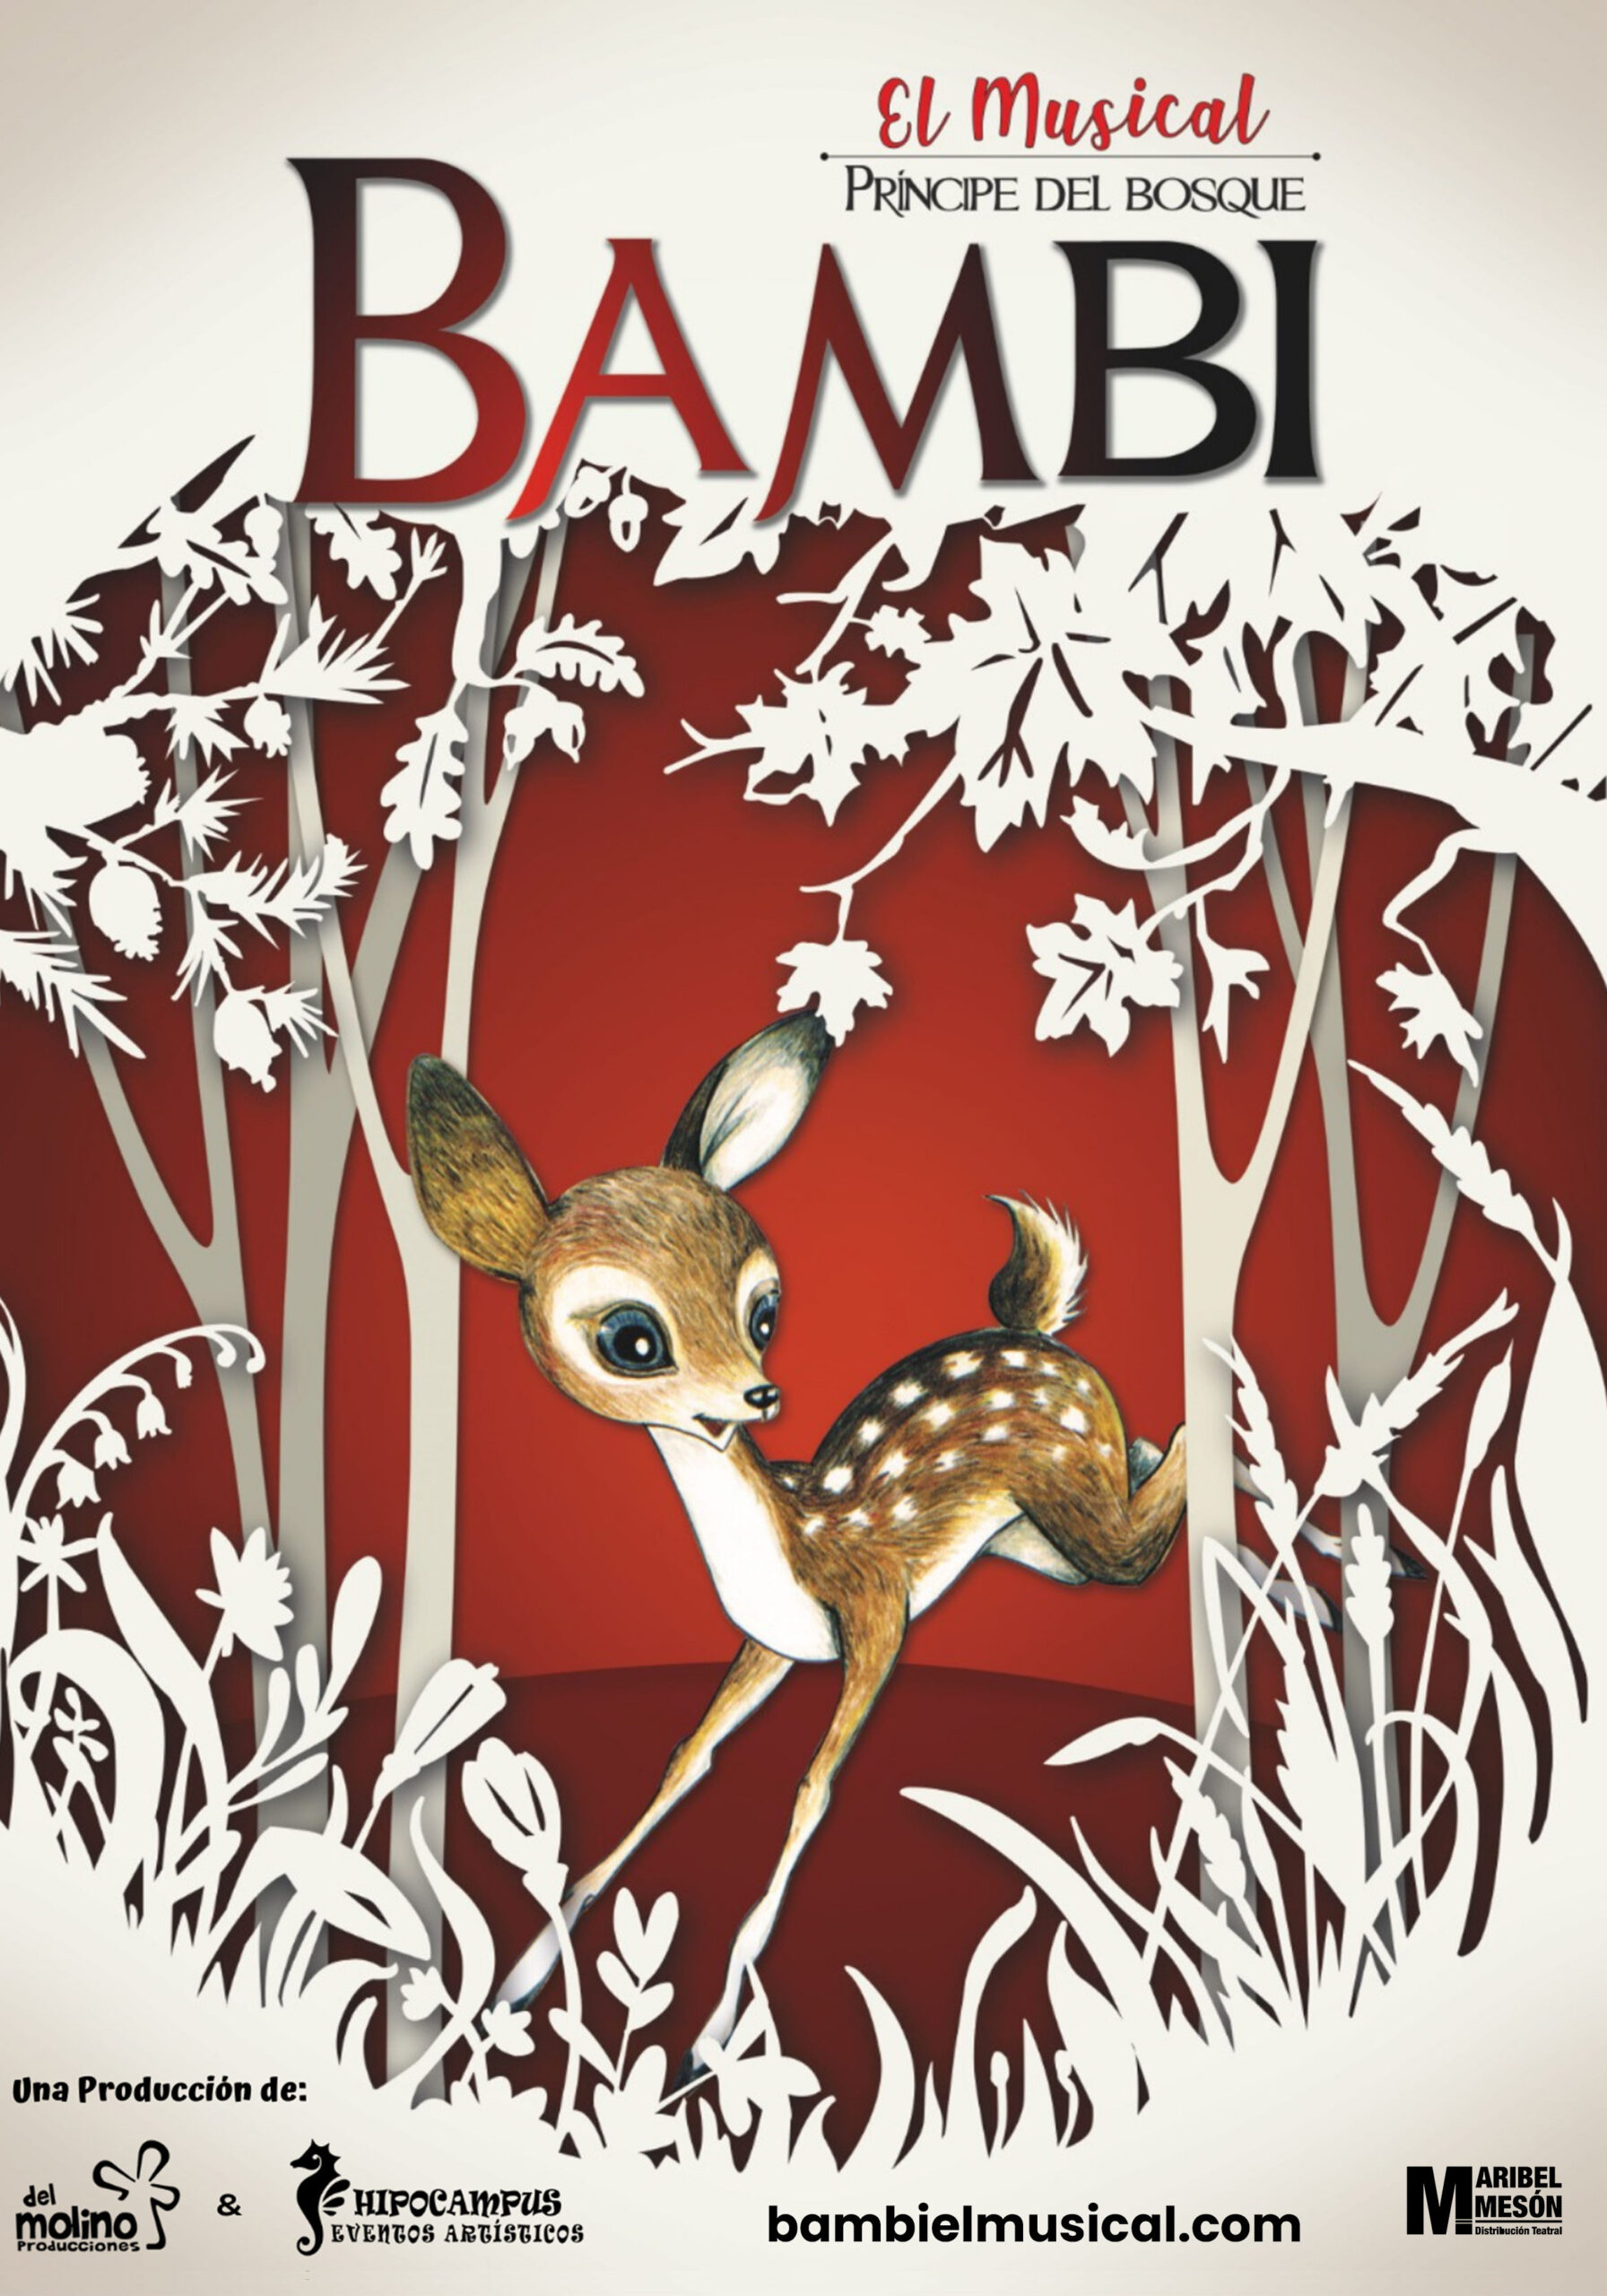 BAMBI, príncipe del bosque, El musical